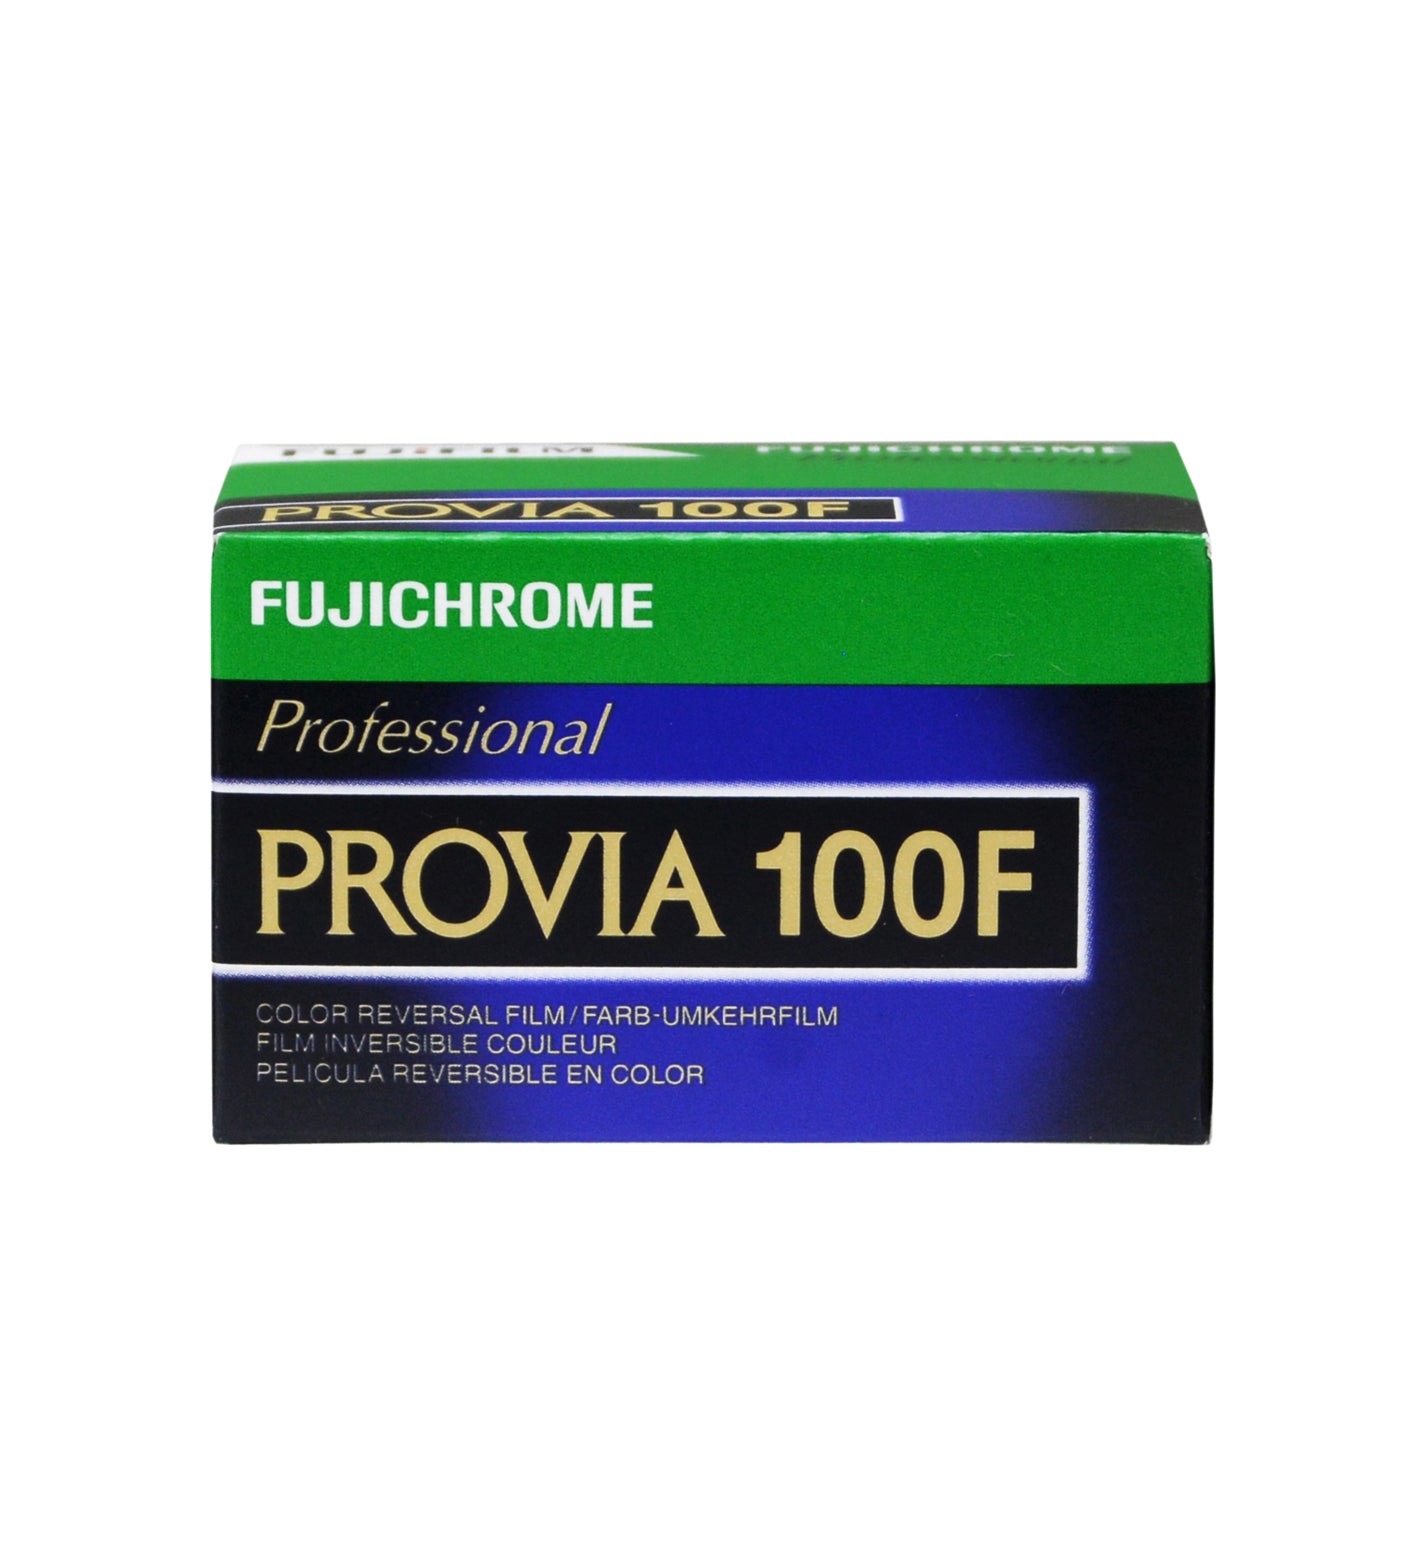 Fujifilm Provia 100F 35mm Film 36 Exposures (£20.99 incl VAT)